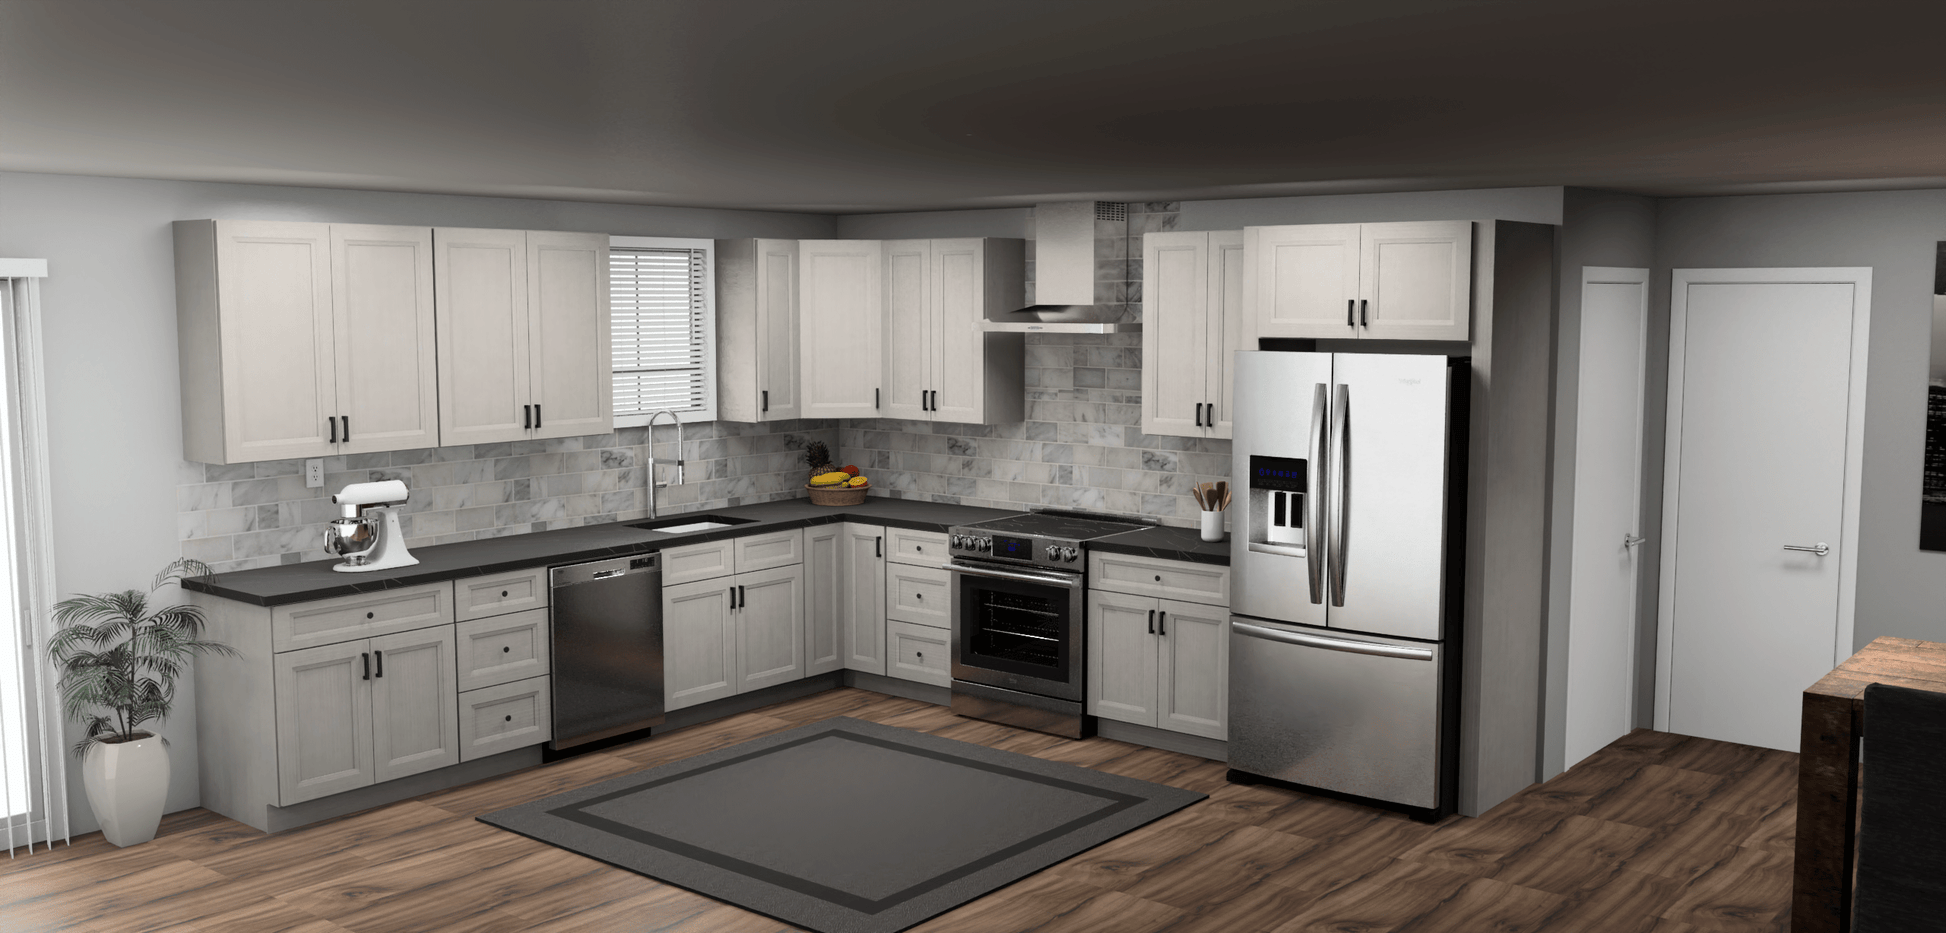 Fabuwood Allure Onyx Horizon 12 x 13 L Shaped Kitchen Main Layout Photo